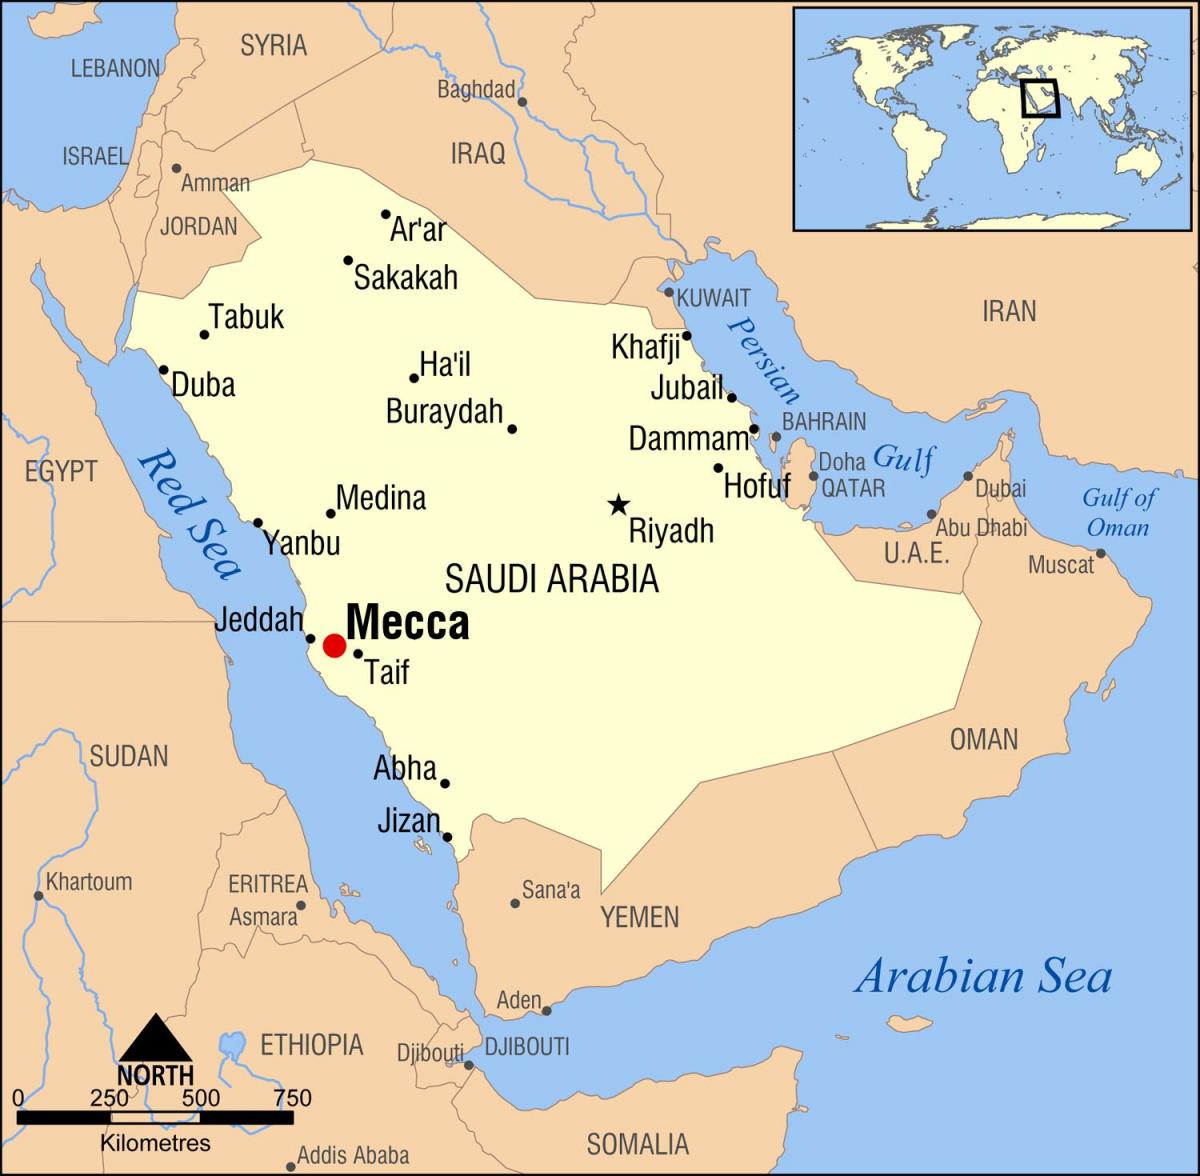 χάρτης της μέκκας στη Σαουδική Αραβία